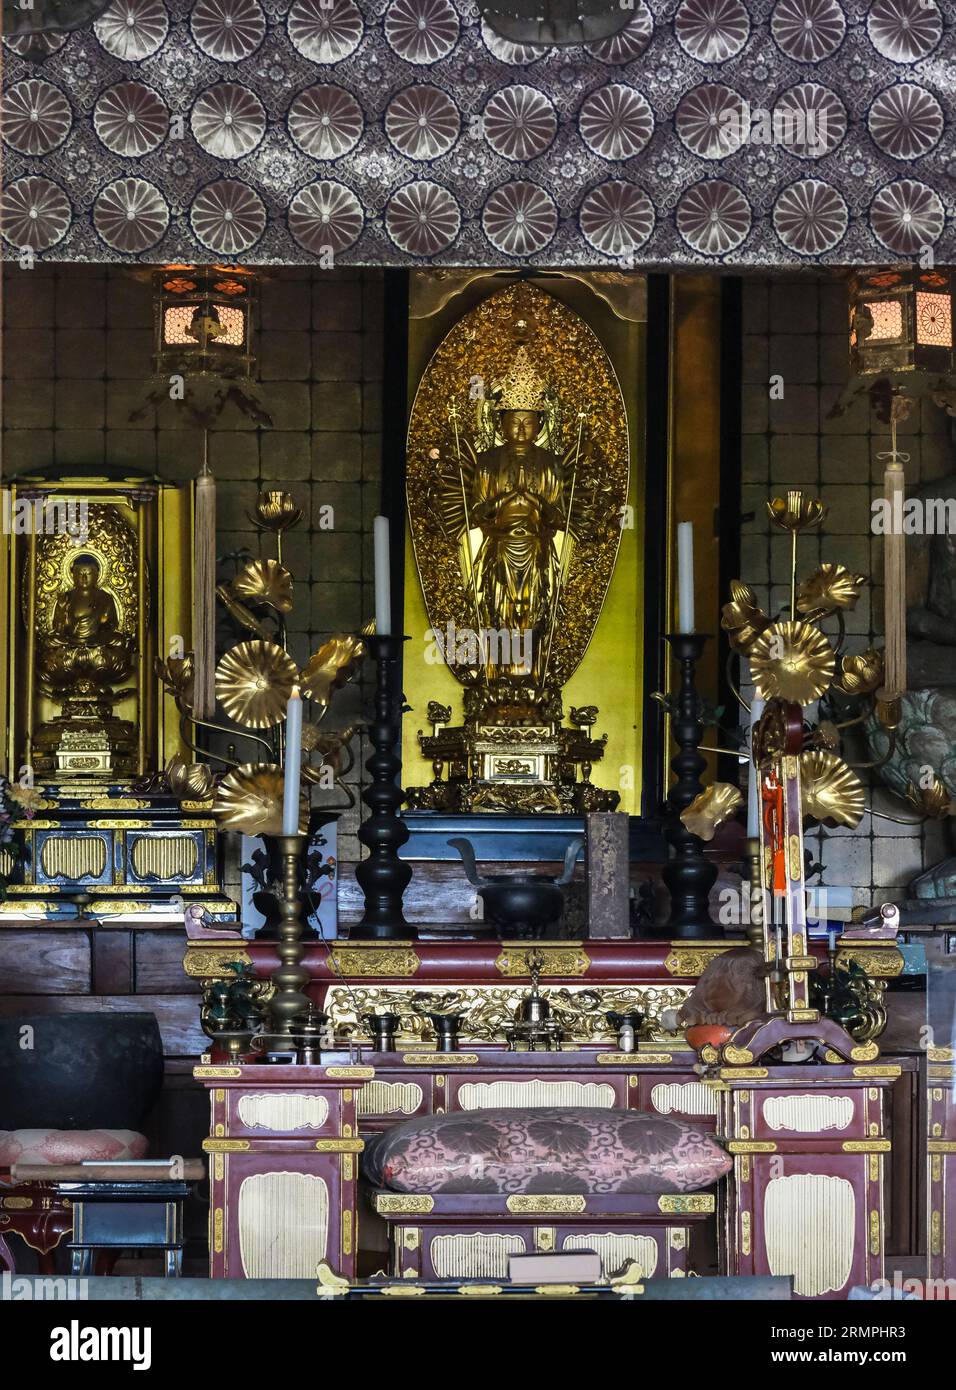 Giappone, Kyushu. Altare del Tempio buddista Choan-ji. Prefettura di Oita, penisola di Kunisaki. Foto Stock